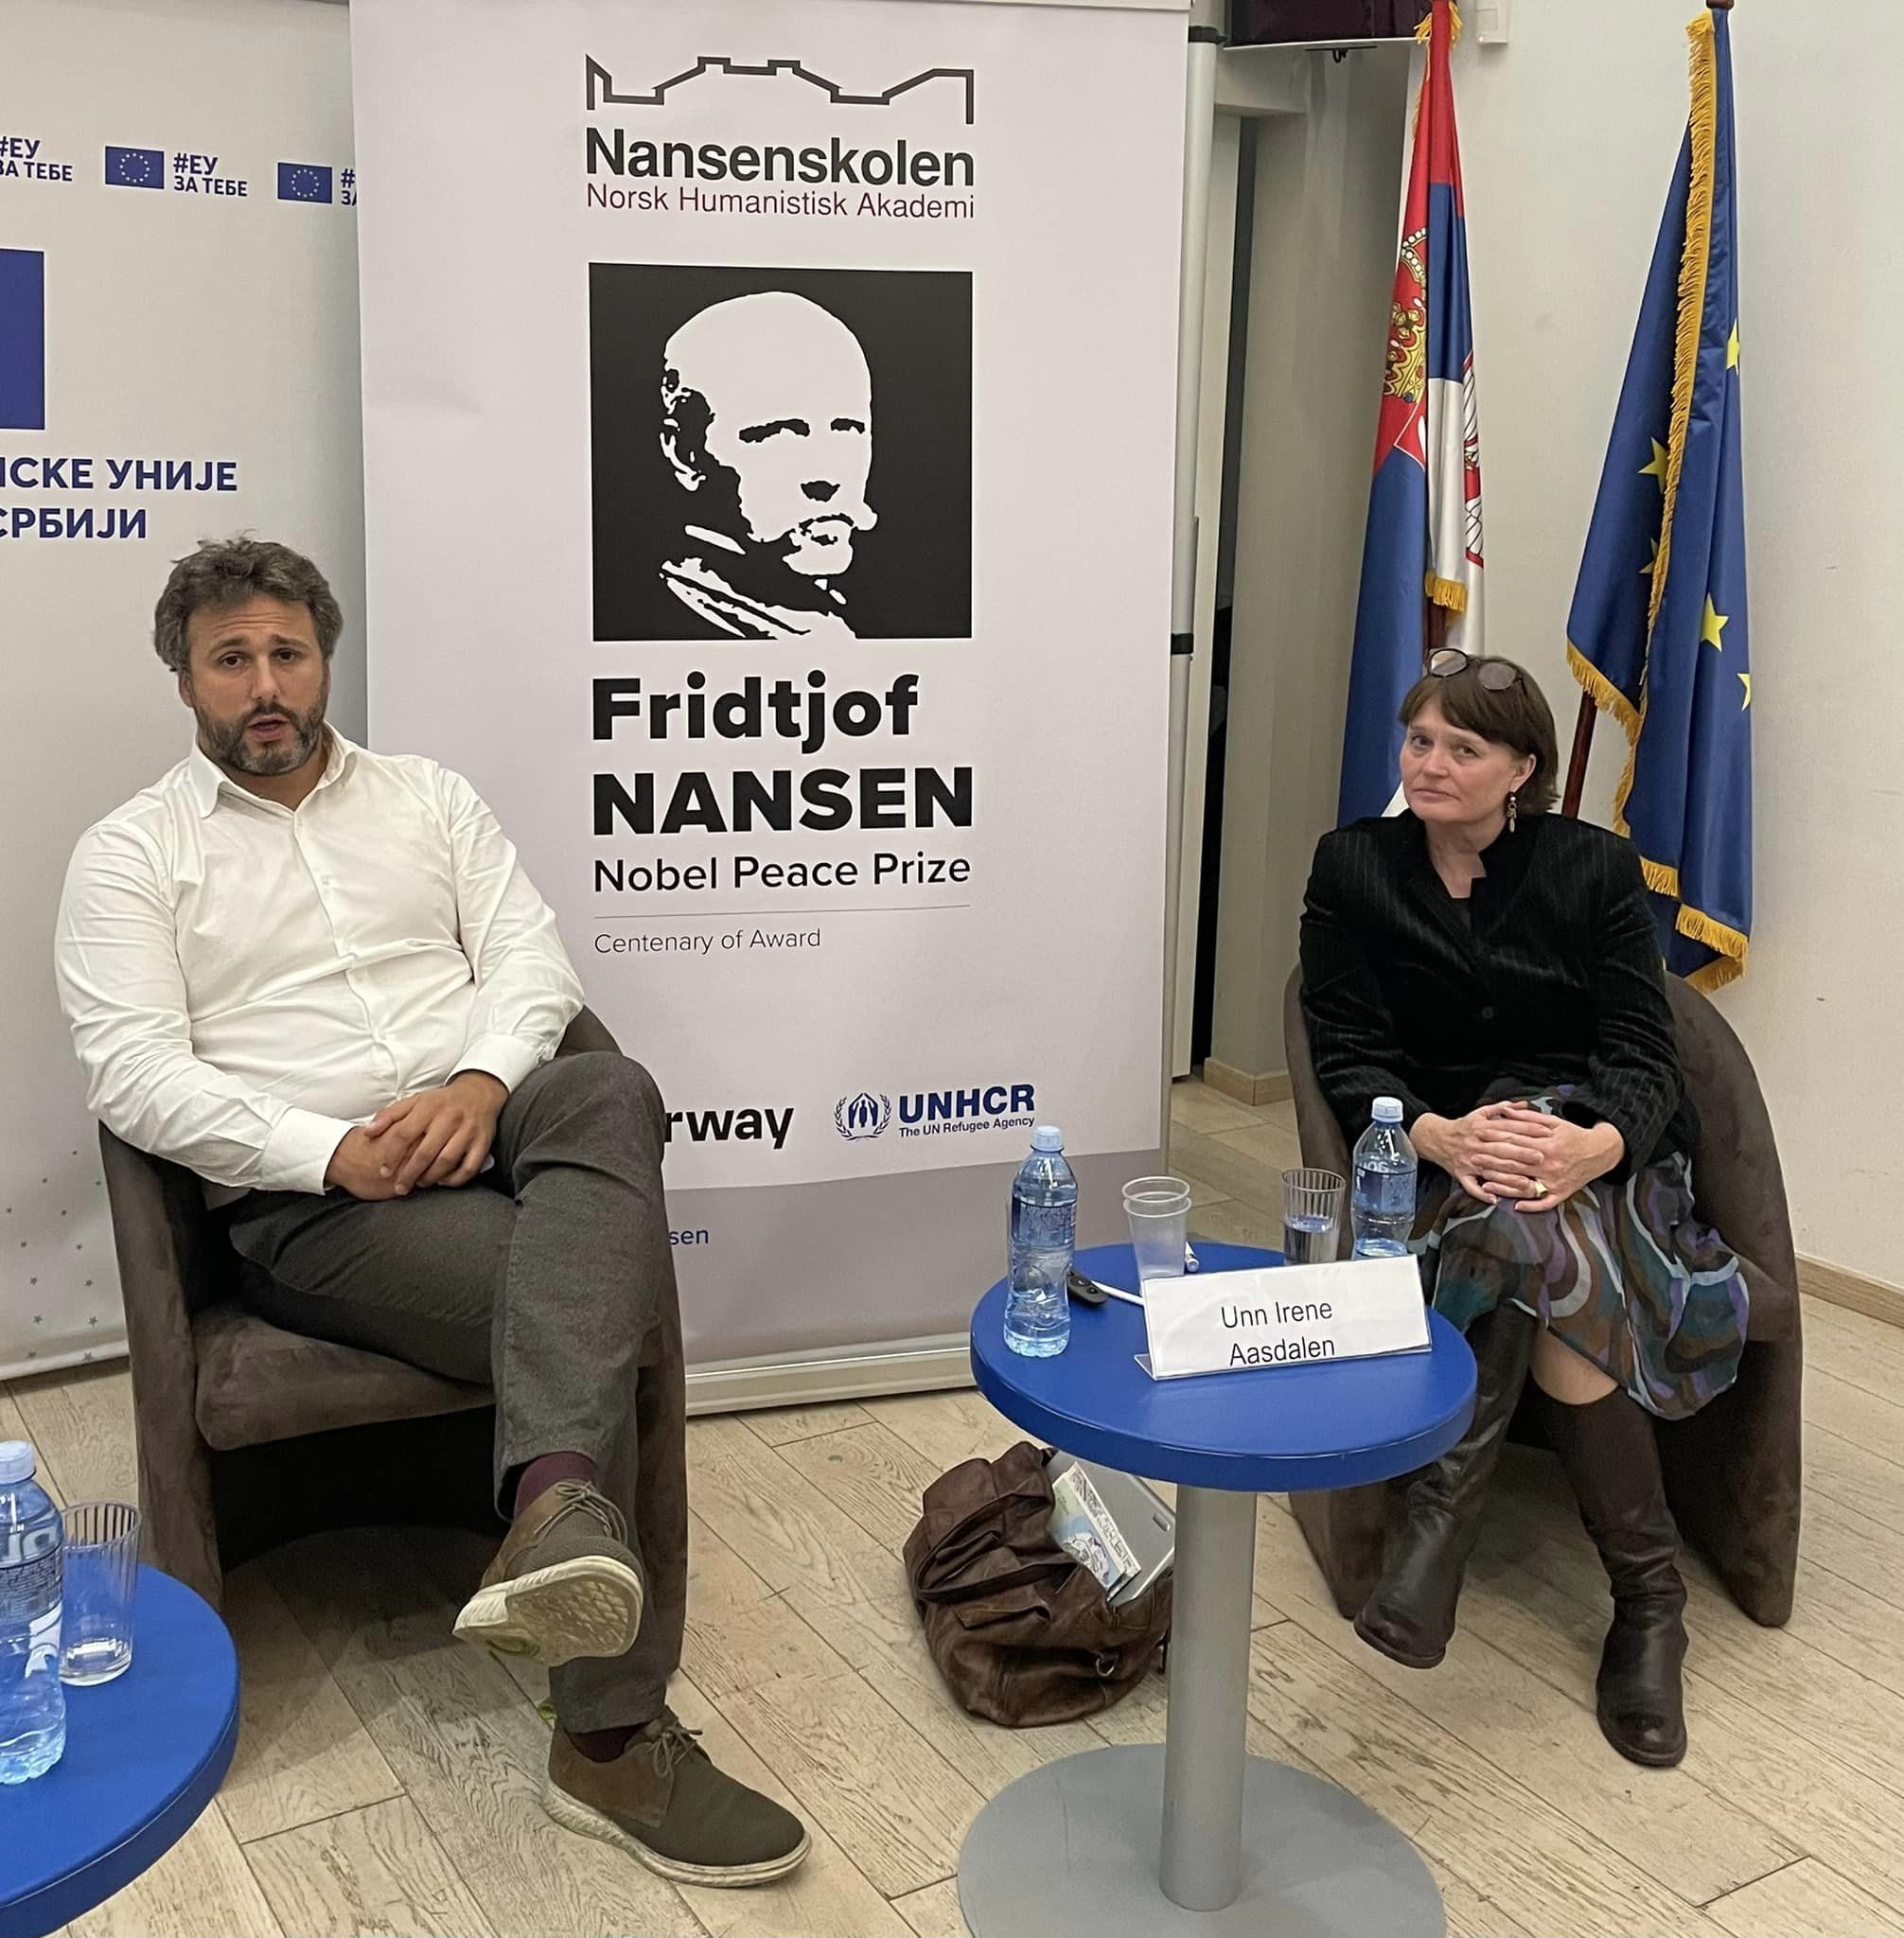 En hvit kvinne og en hvit mann sitter i hver sin stol foran en Rollup med bilde av Fridtjof Nansen. Bak kvinnen står to flagg, det ene er EU-flagget.  